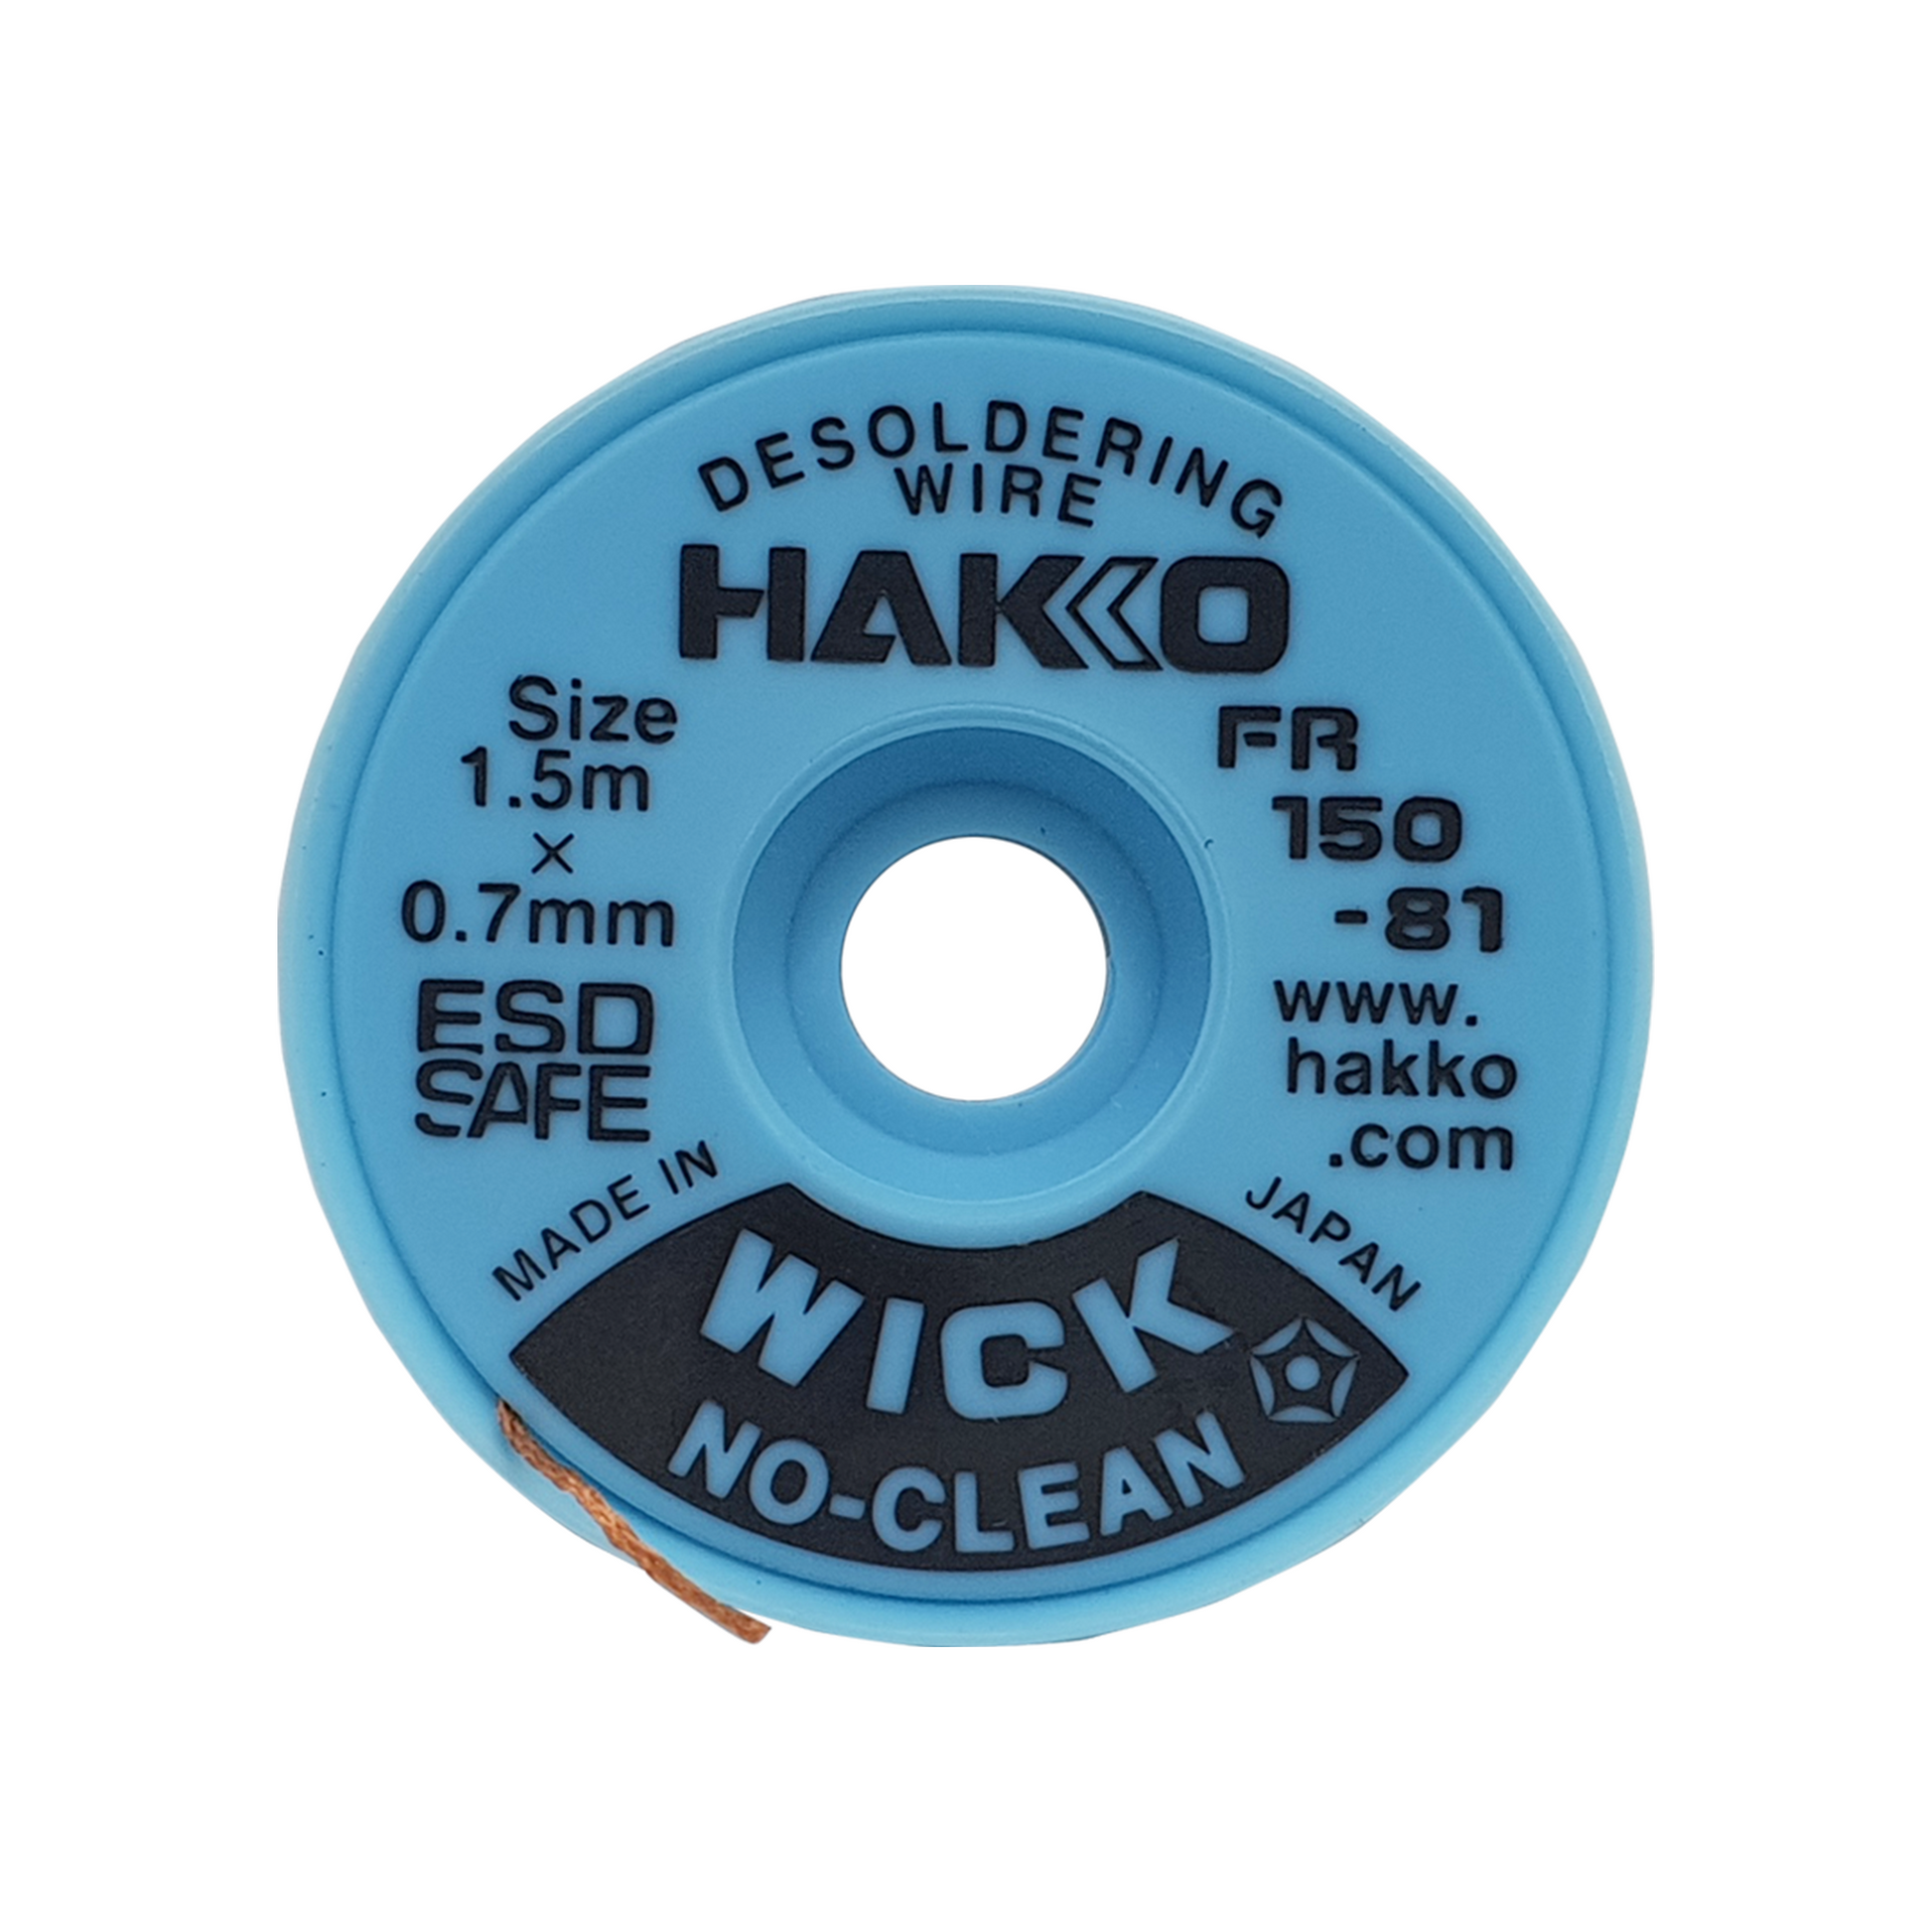 Hakko_ FR150-81 No Clean Wick Desoldering Wire (1.5m X 0.7mm)_ Desoldering Wick_ Hakko Products